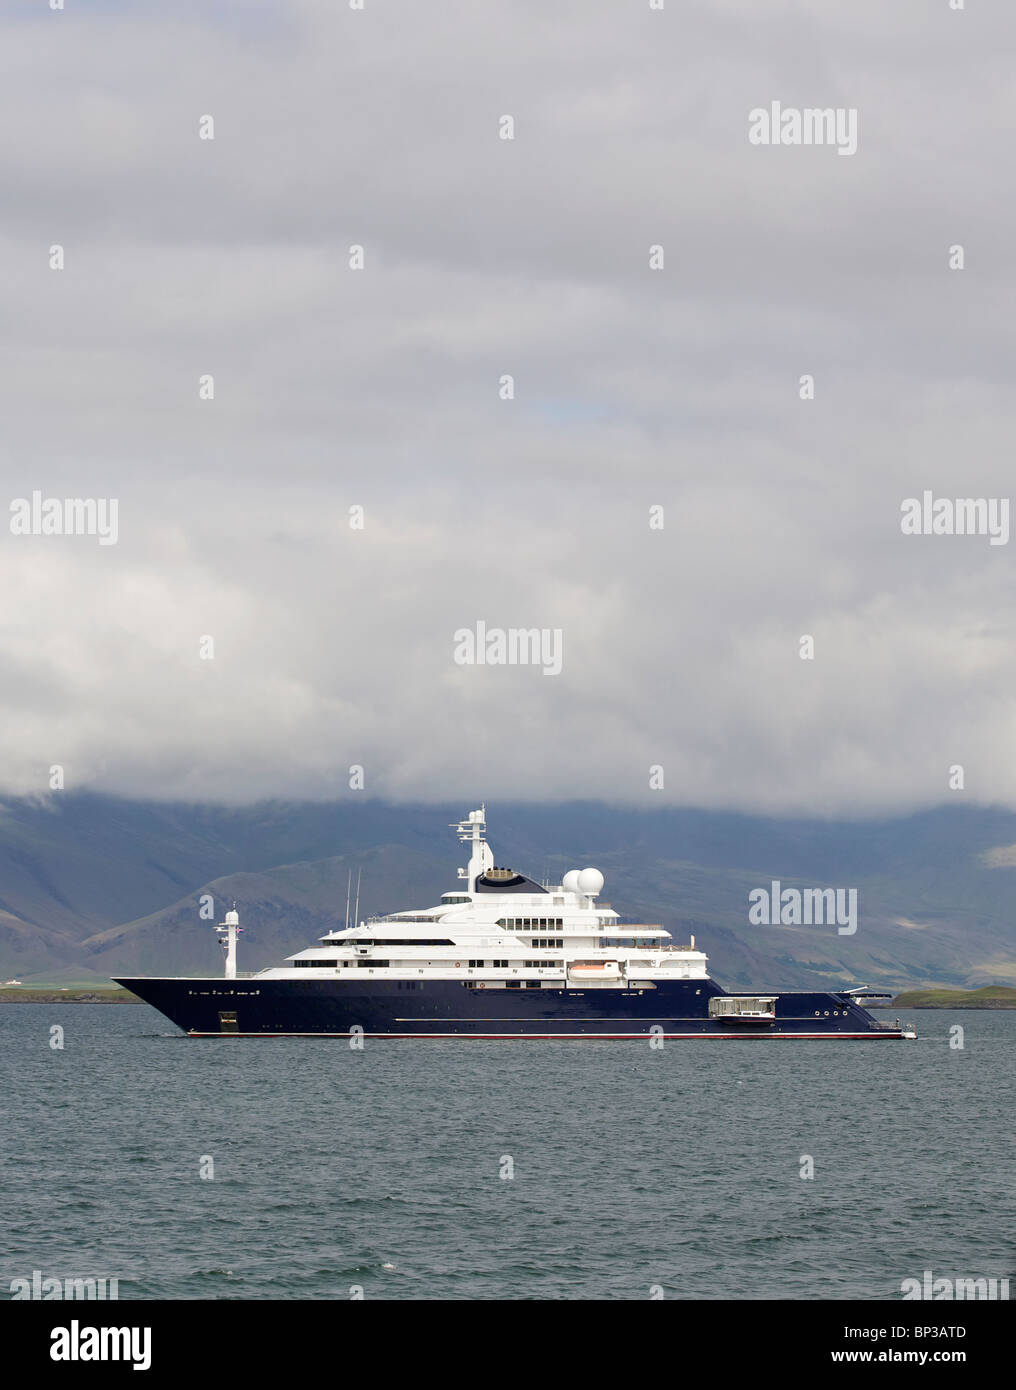 Paul allen yacht immagini e fotografie stock ad alta risoluzione - Alamy